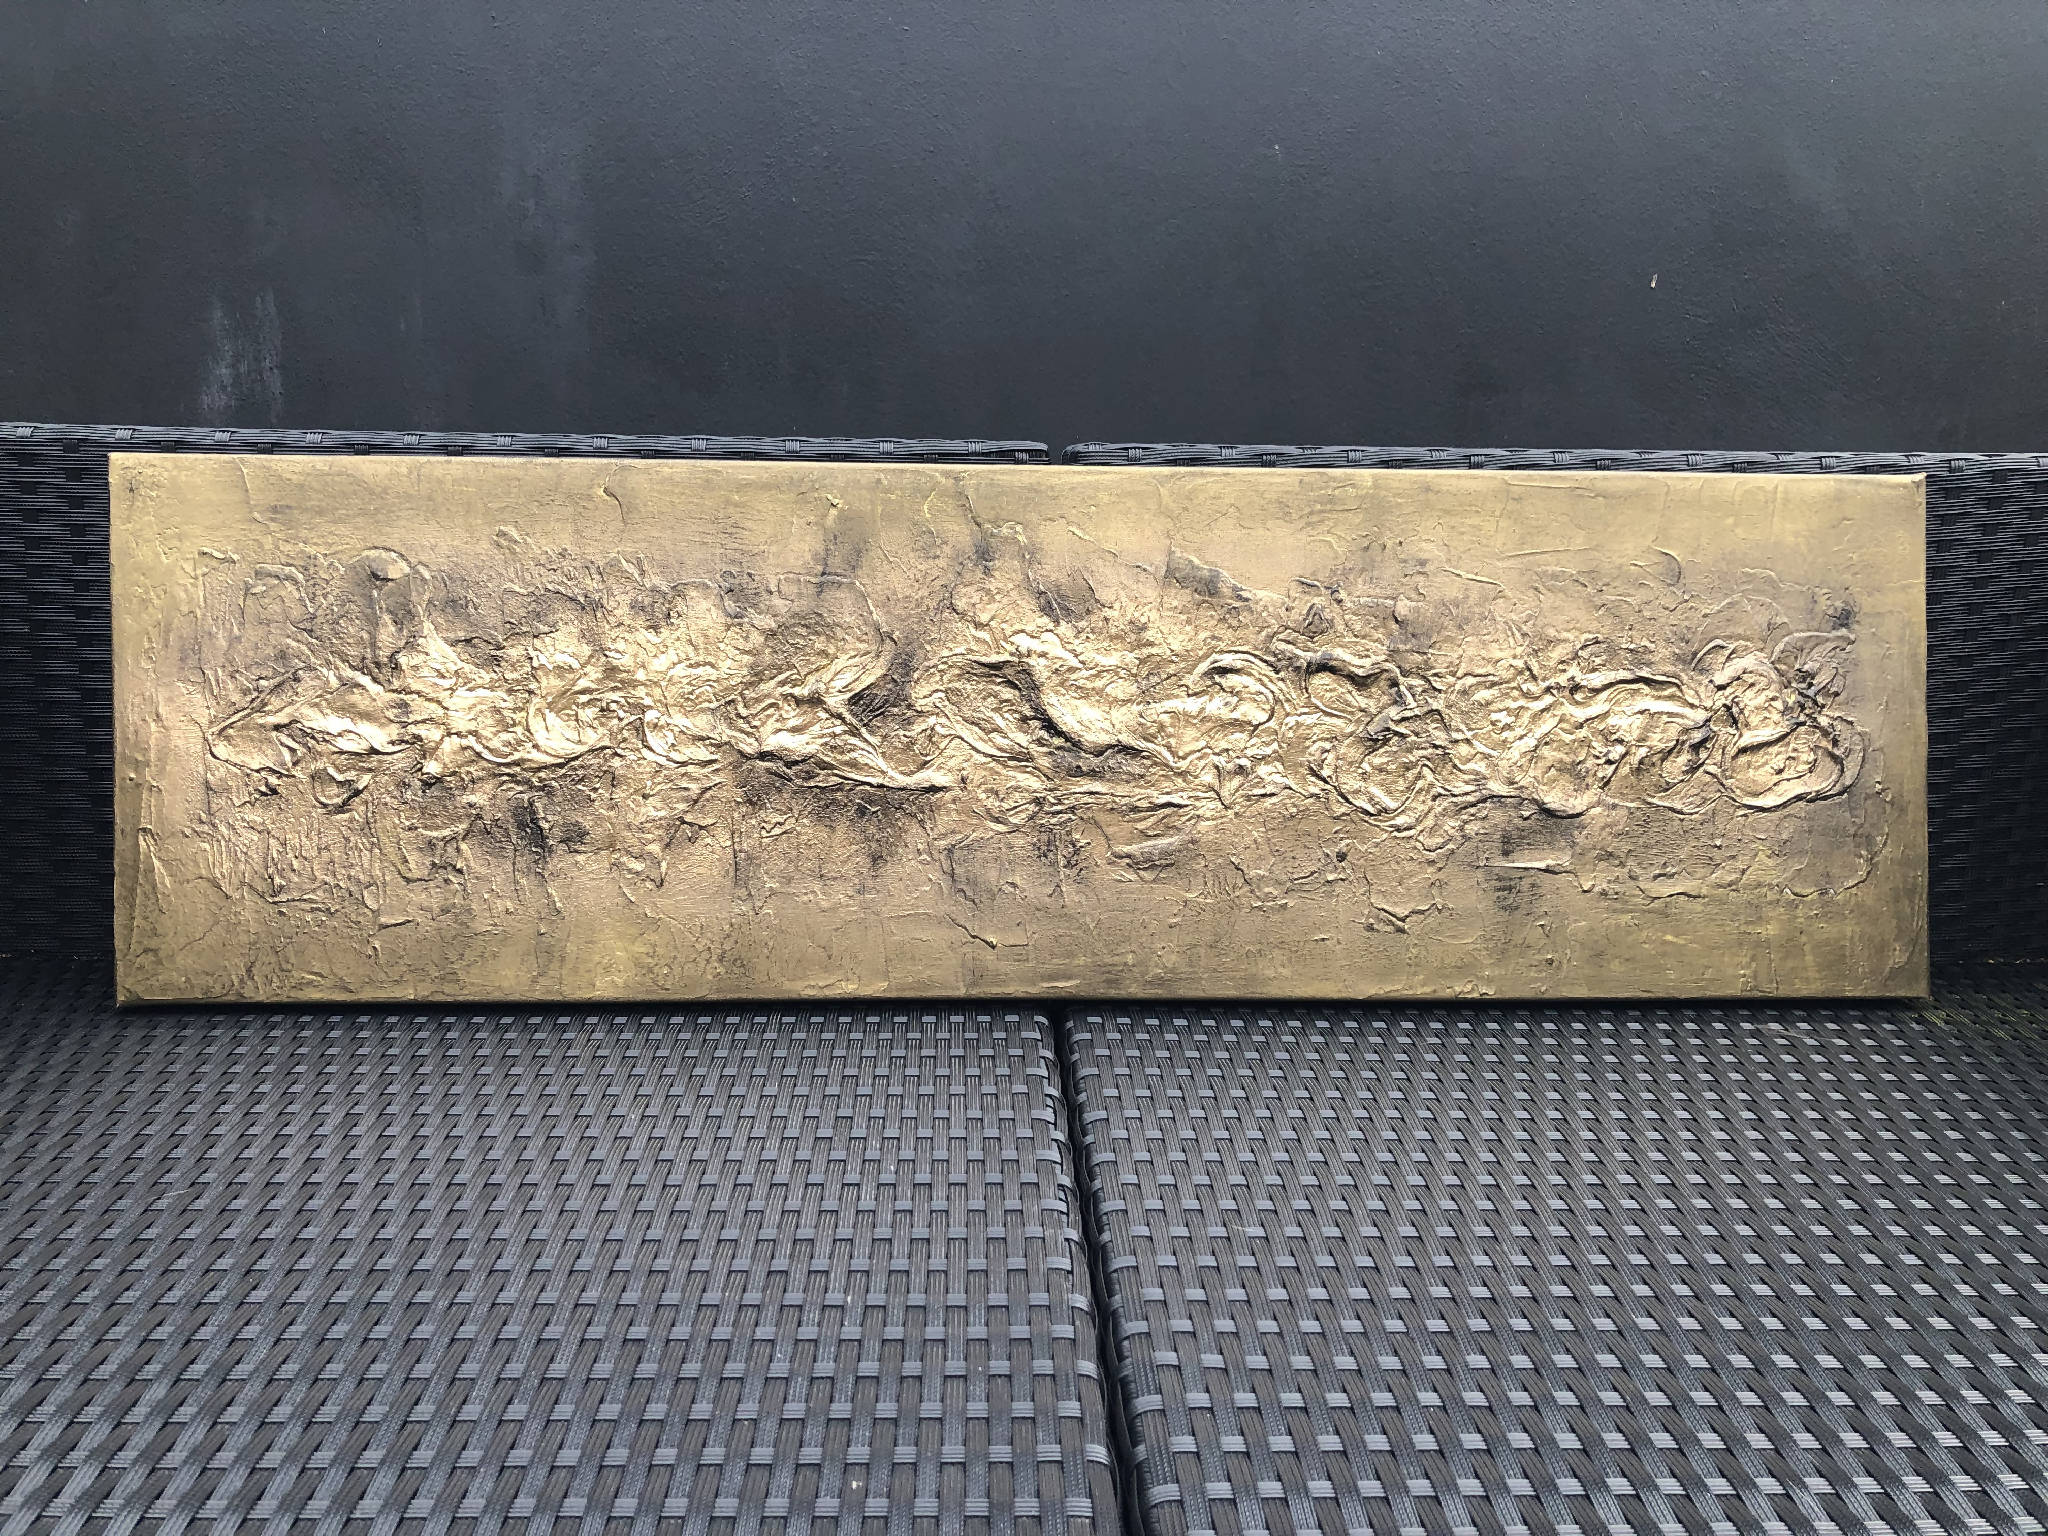 BRONZIUM - Striking textured art in bronze and gold (102x30x4cm)